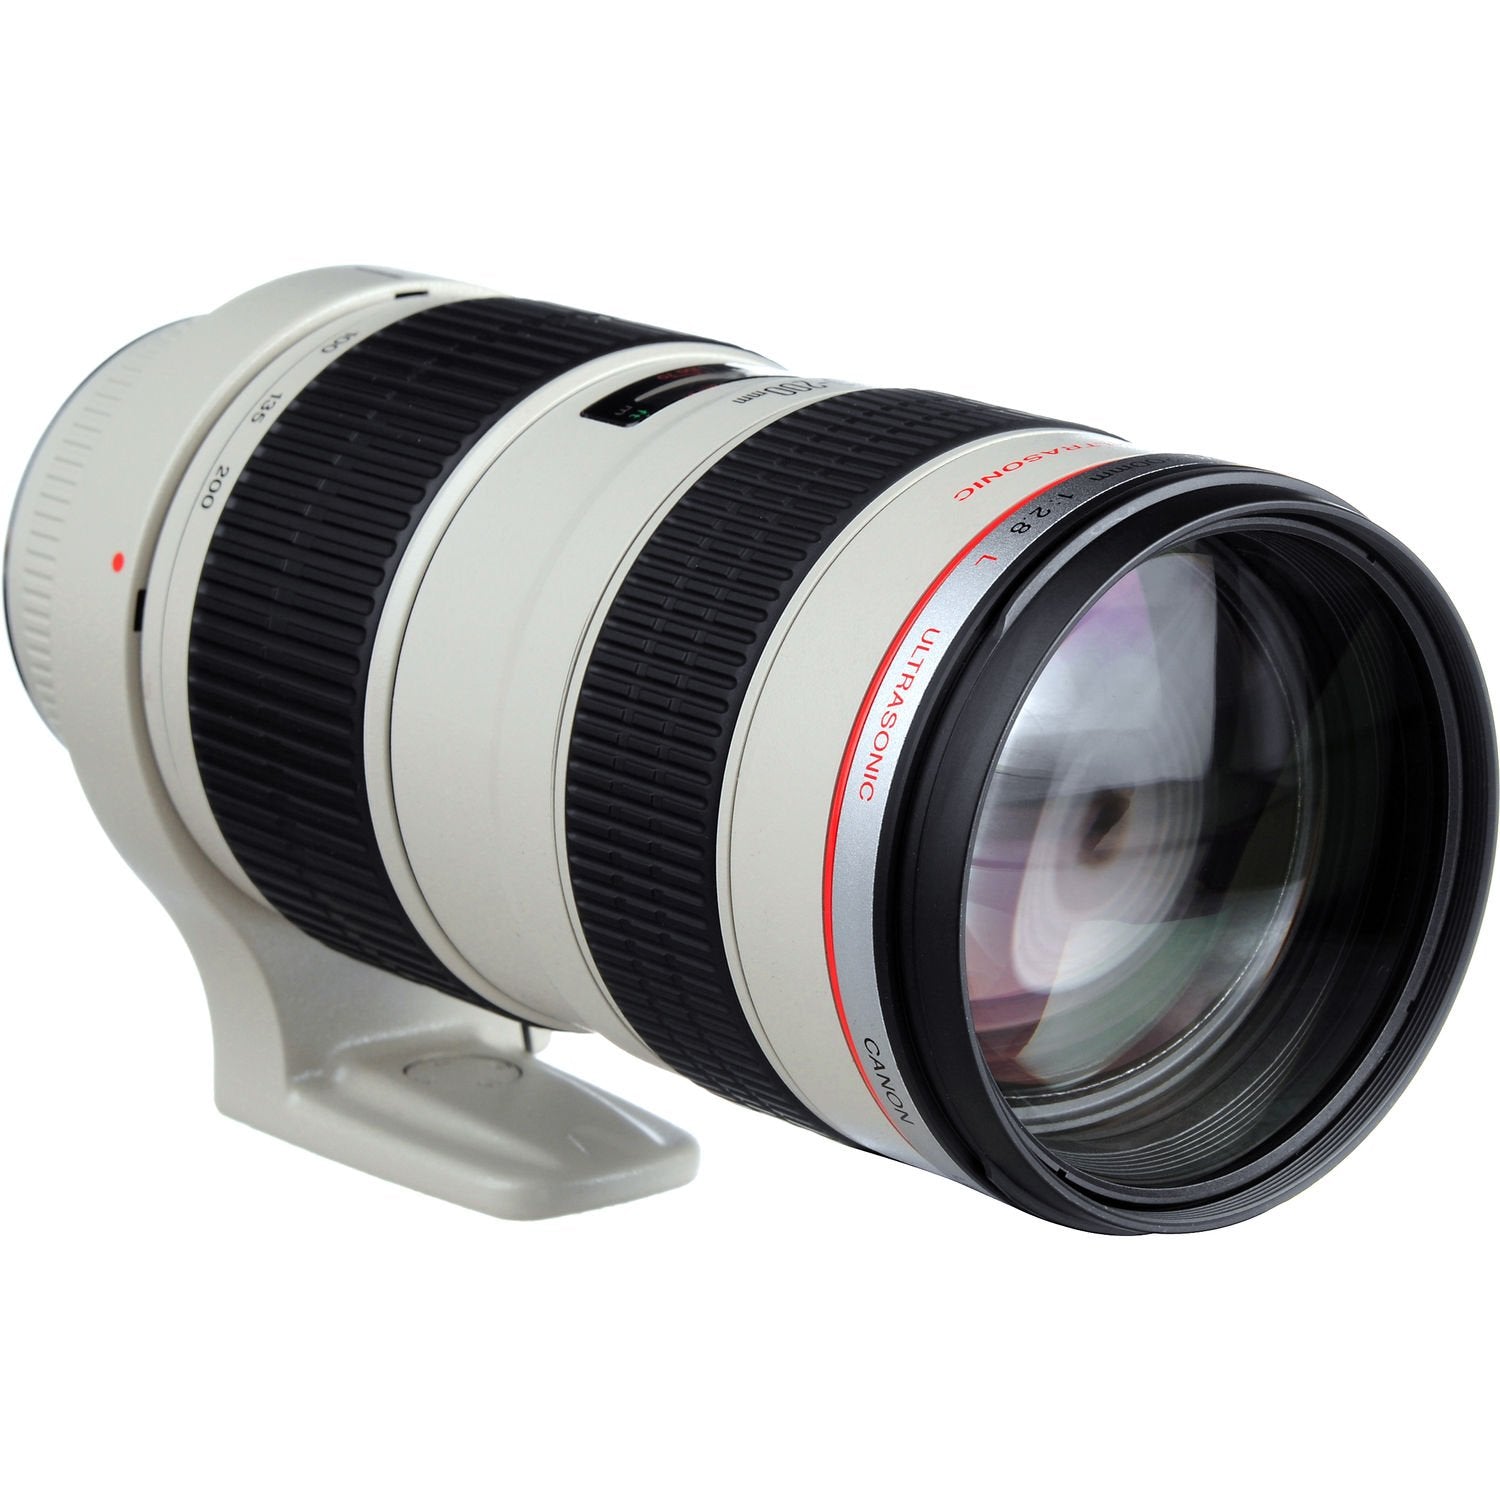 Canon EF 70-200mm f/2.8L USM Telephoto Zoom Lens Bundle for Canon SLR Digital Cameras Intl Model - Pro